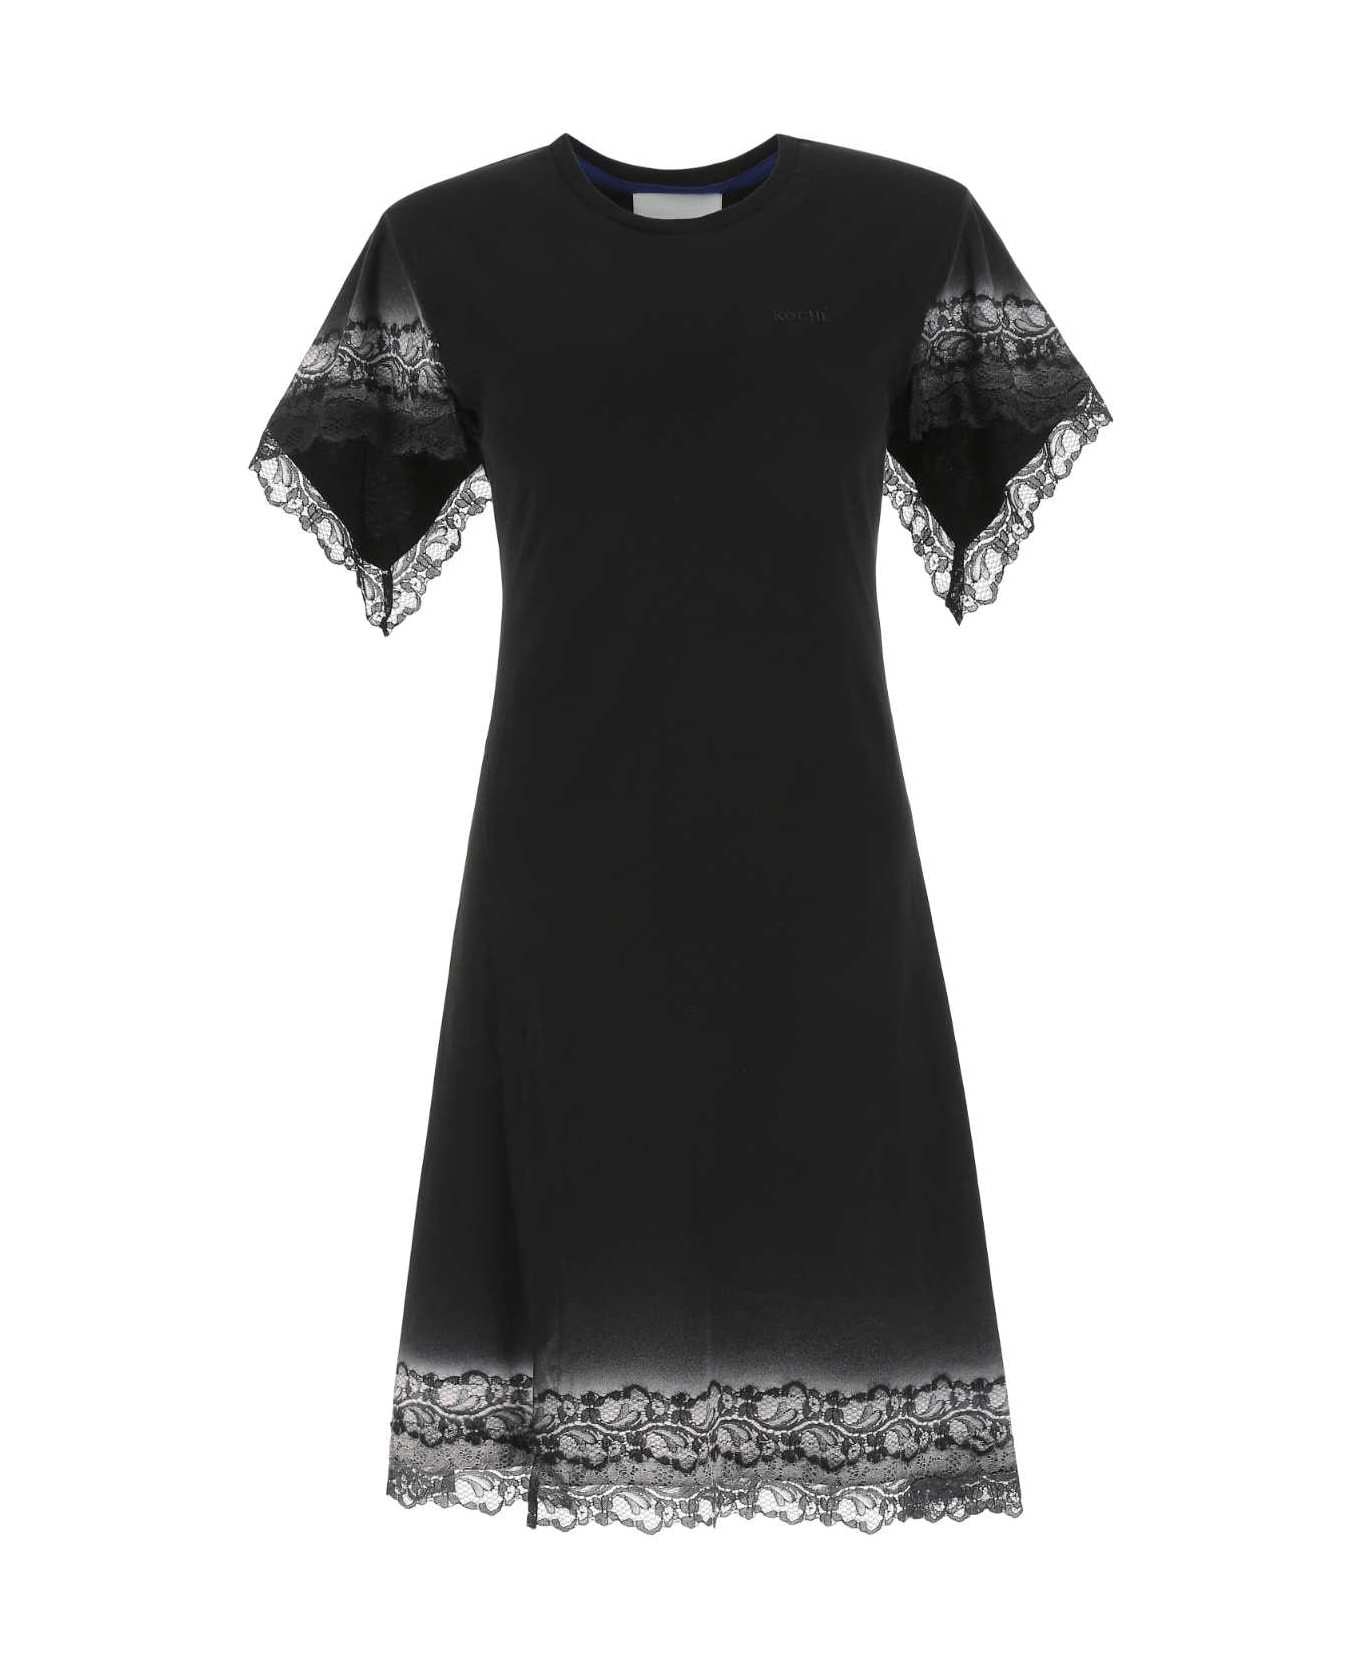 Koché Black Cotton Dress - 900